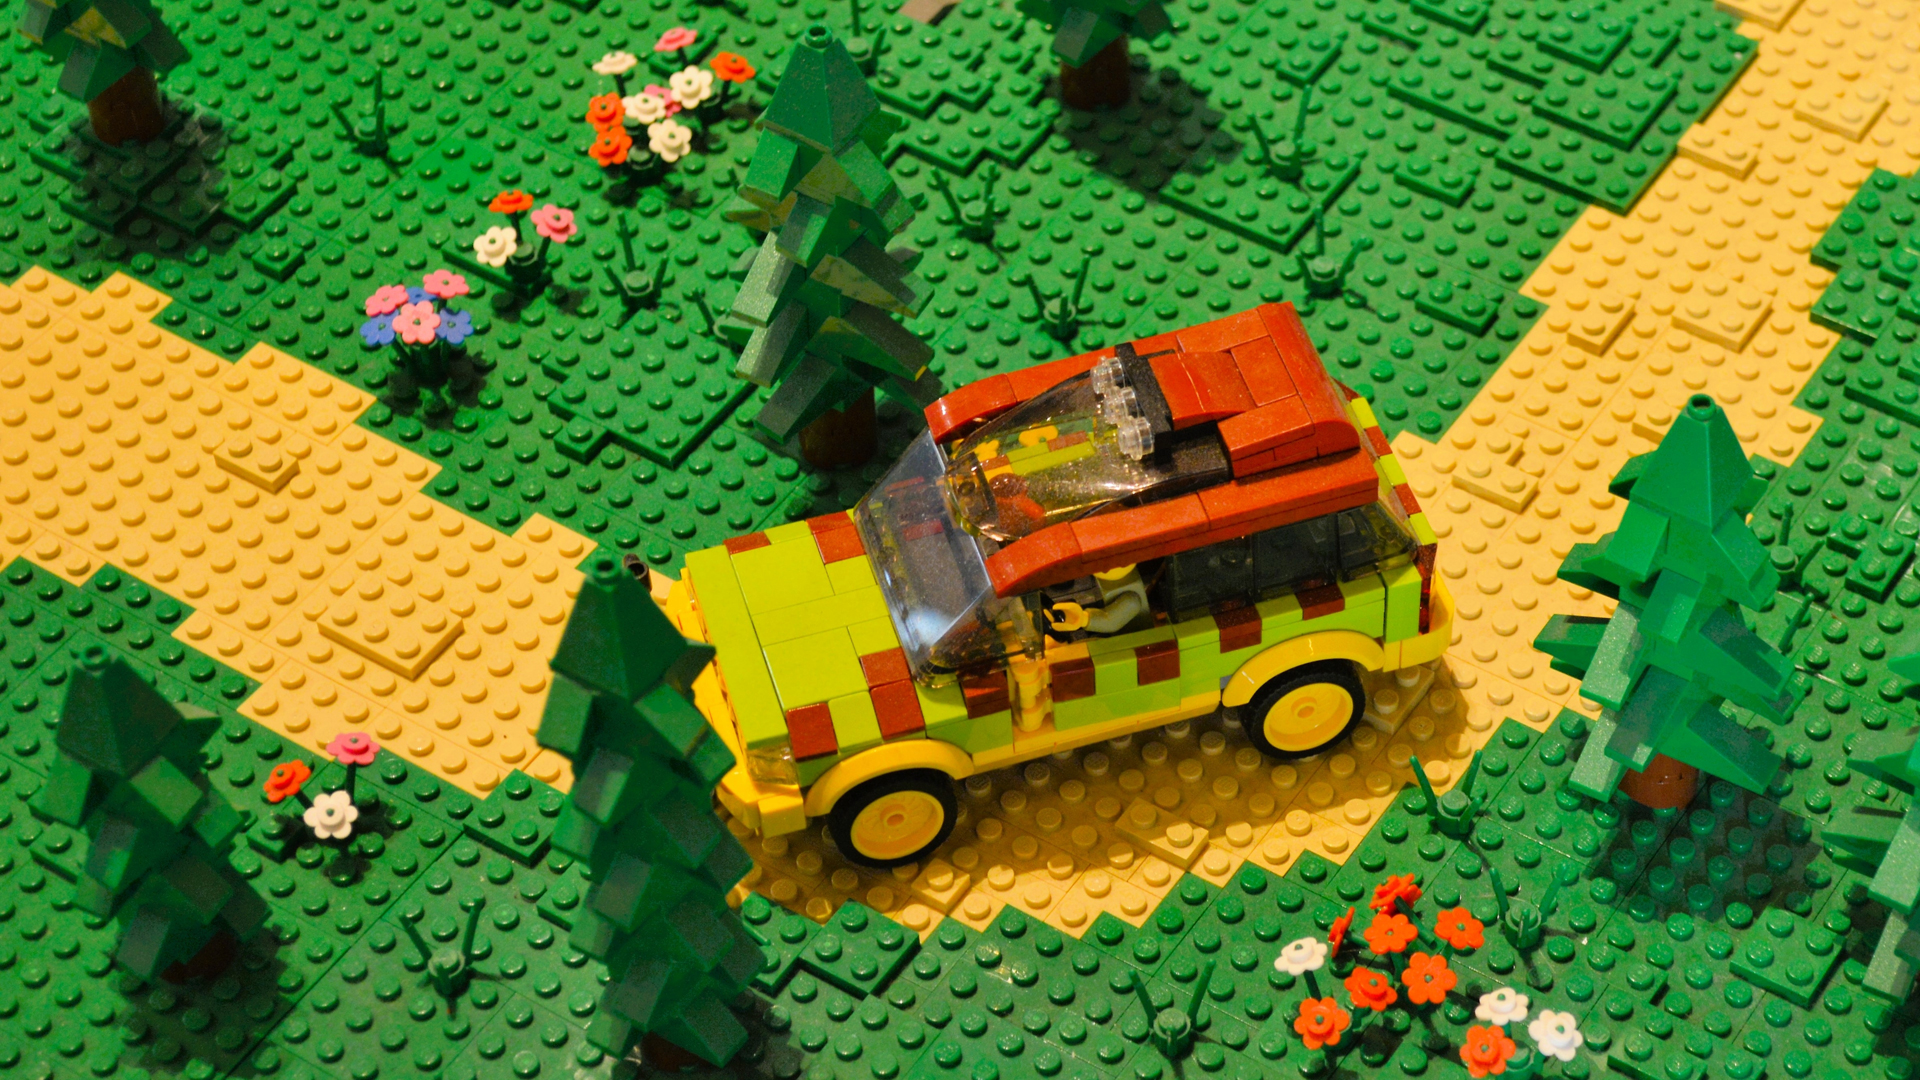 LEGO car